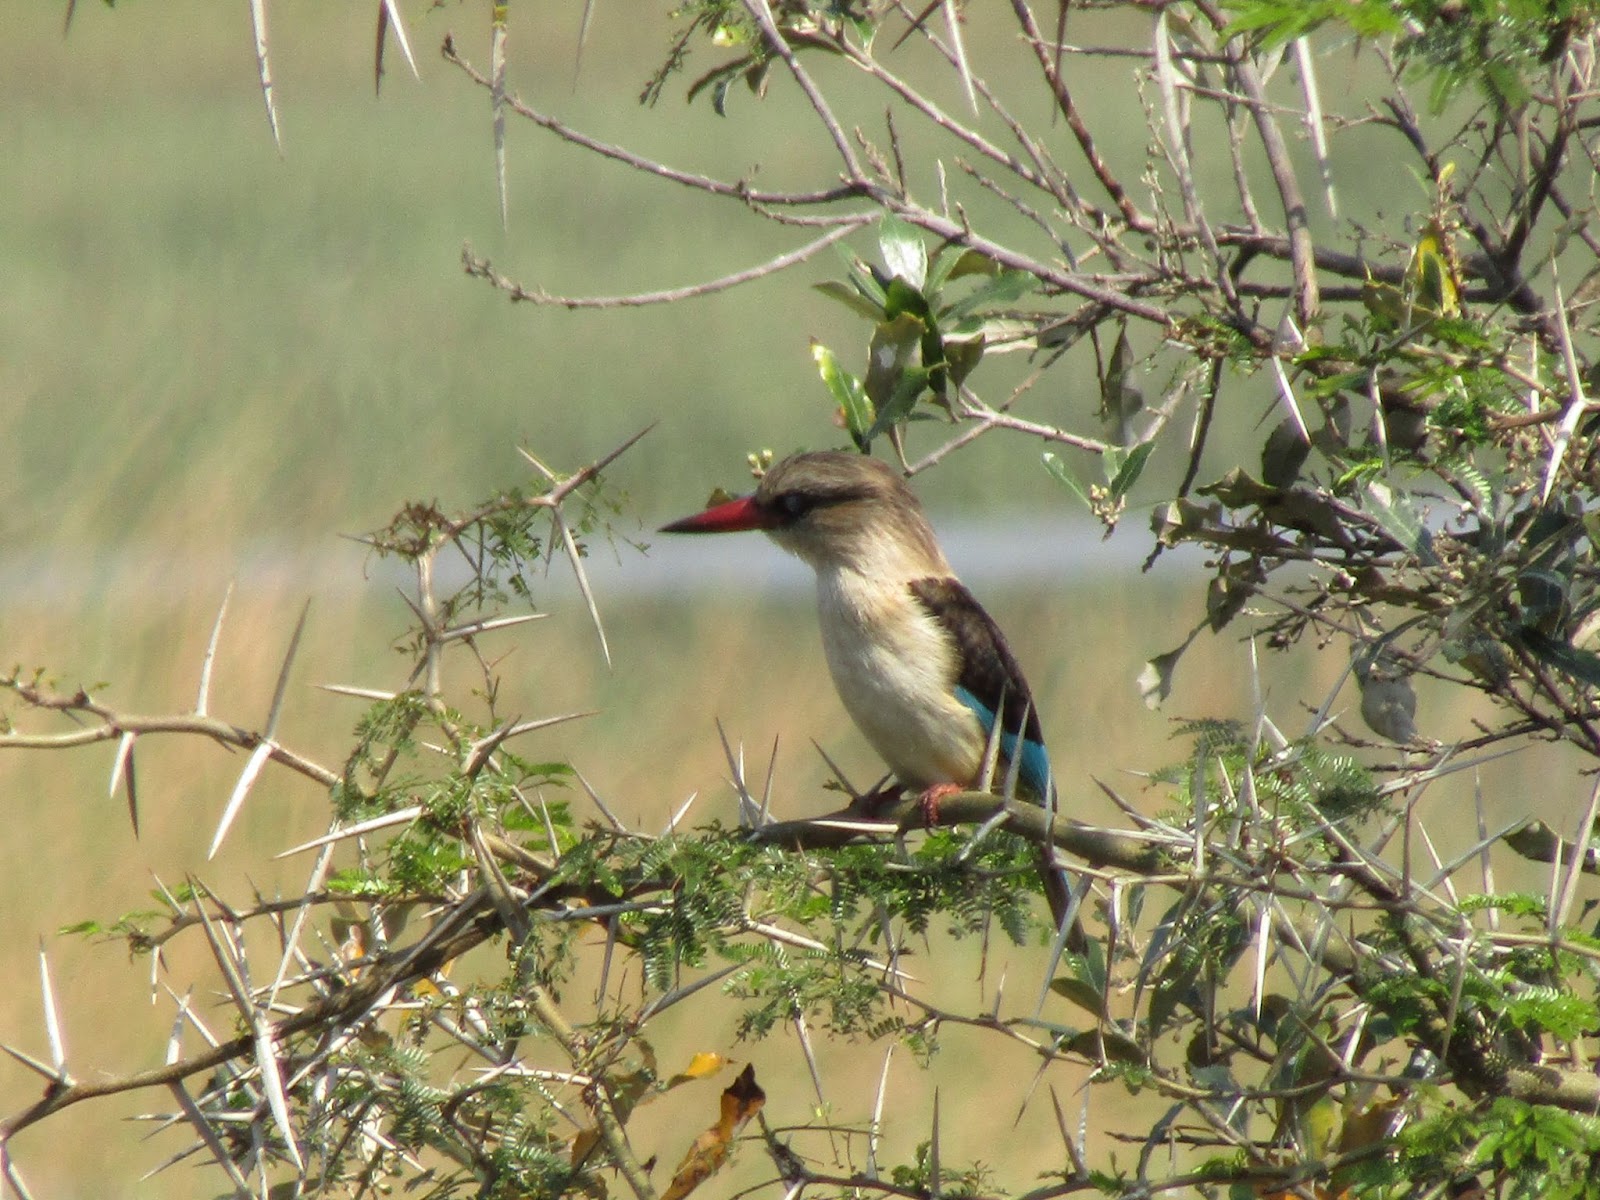 Birdlife at iSangaliso Wetland Park